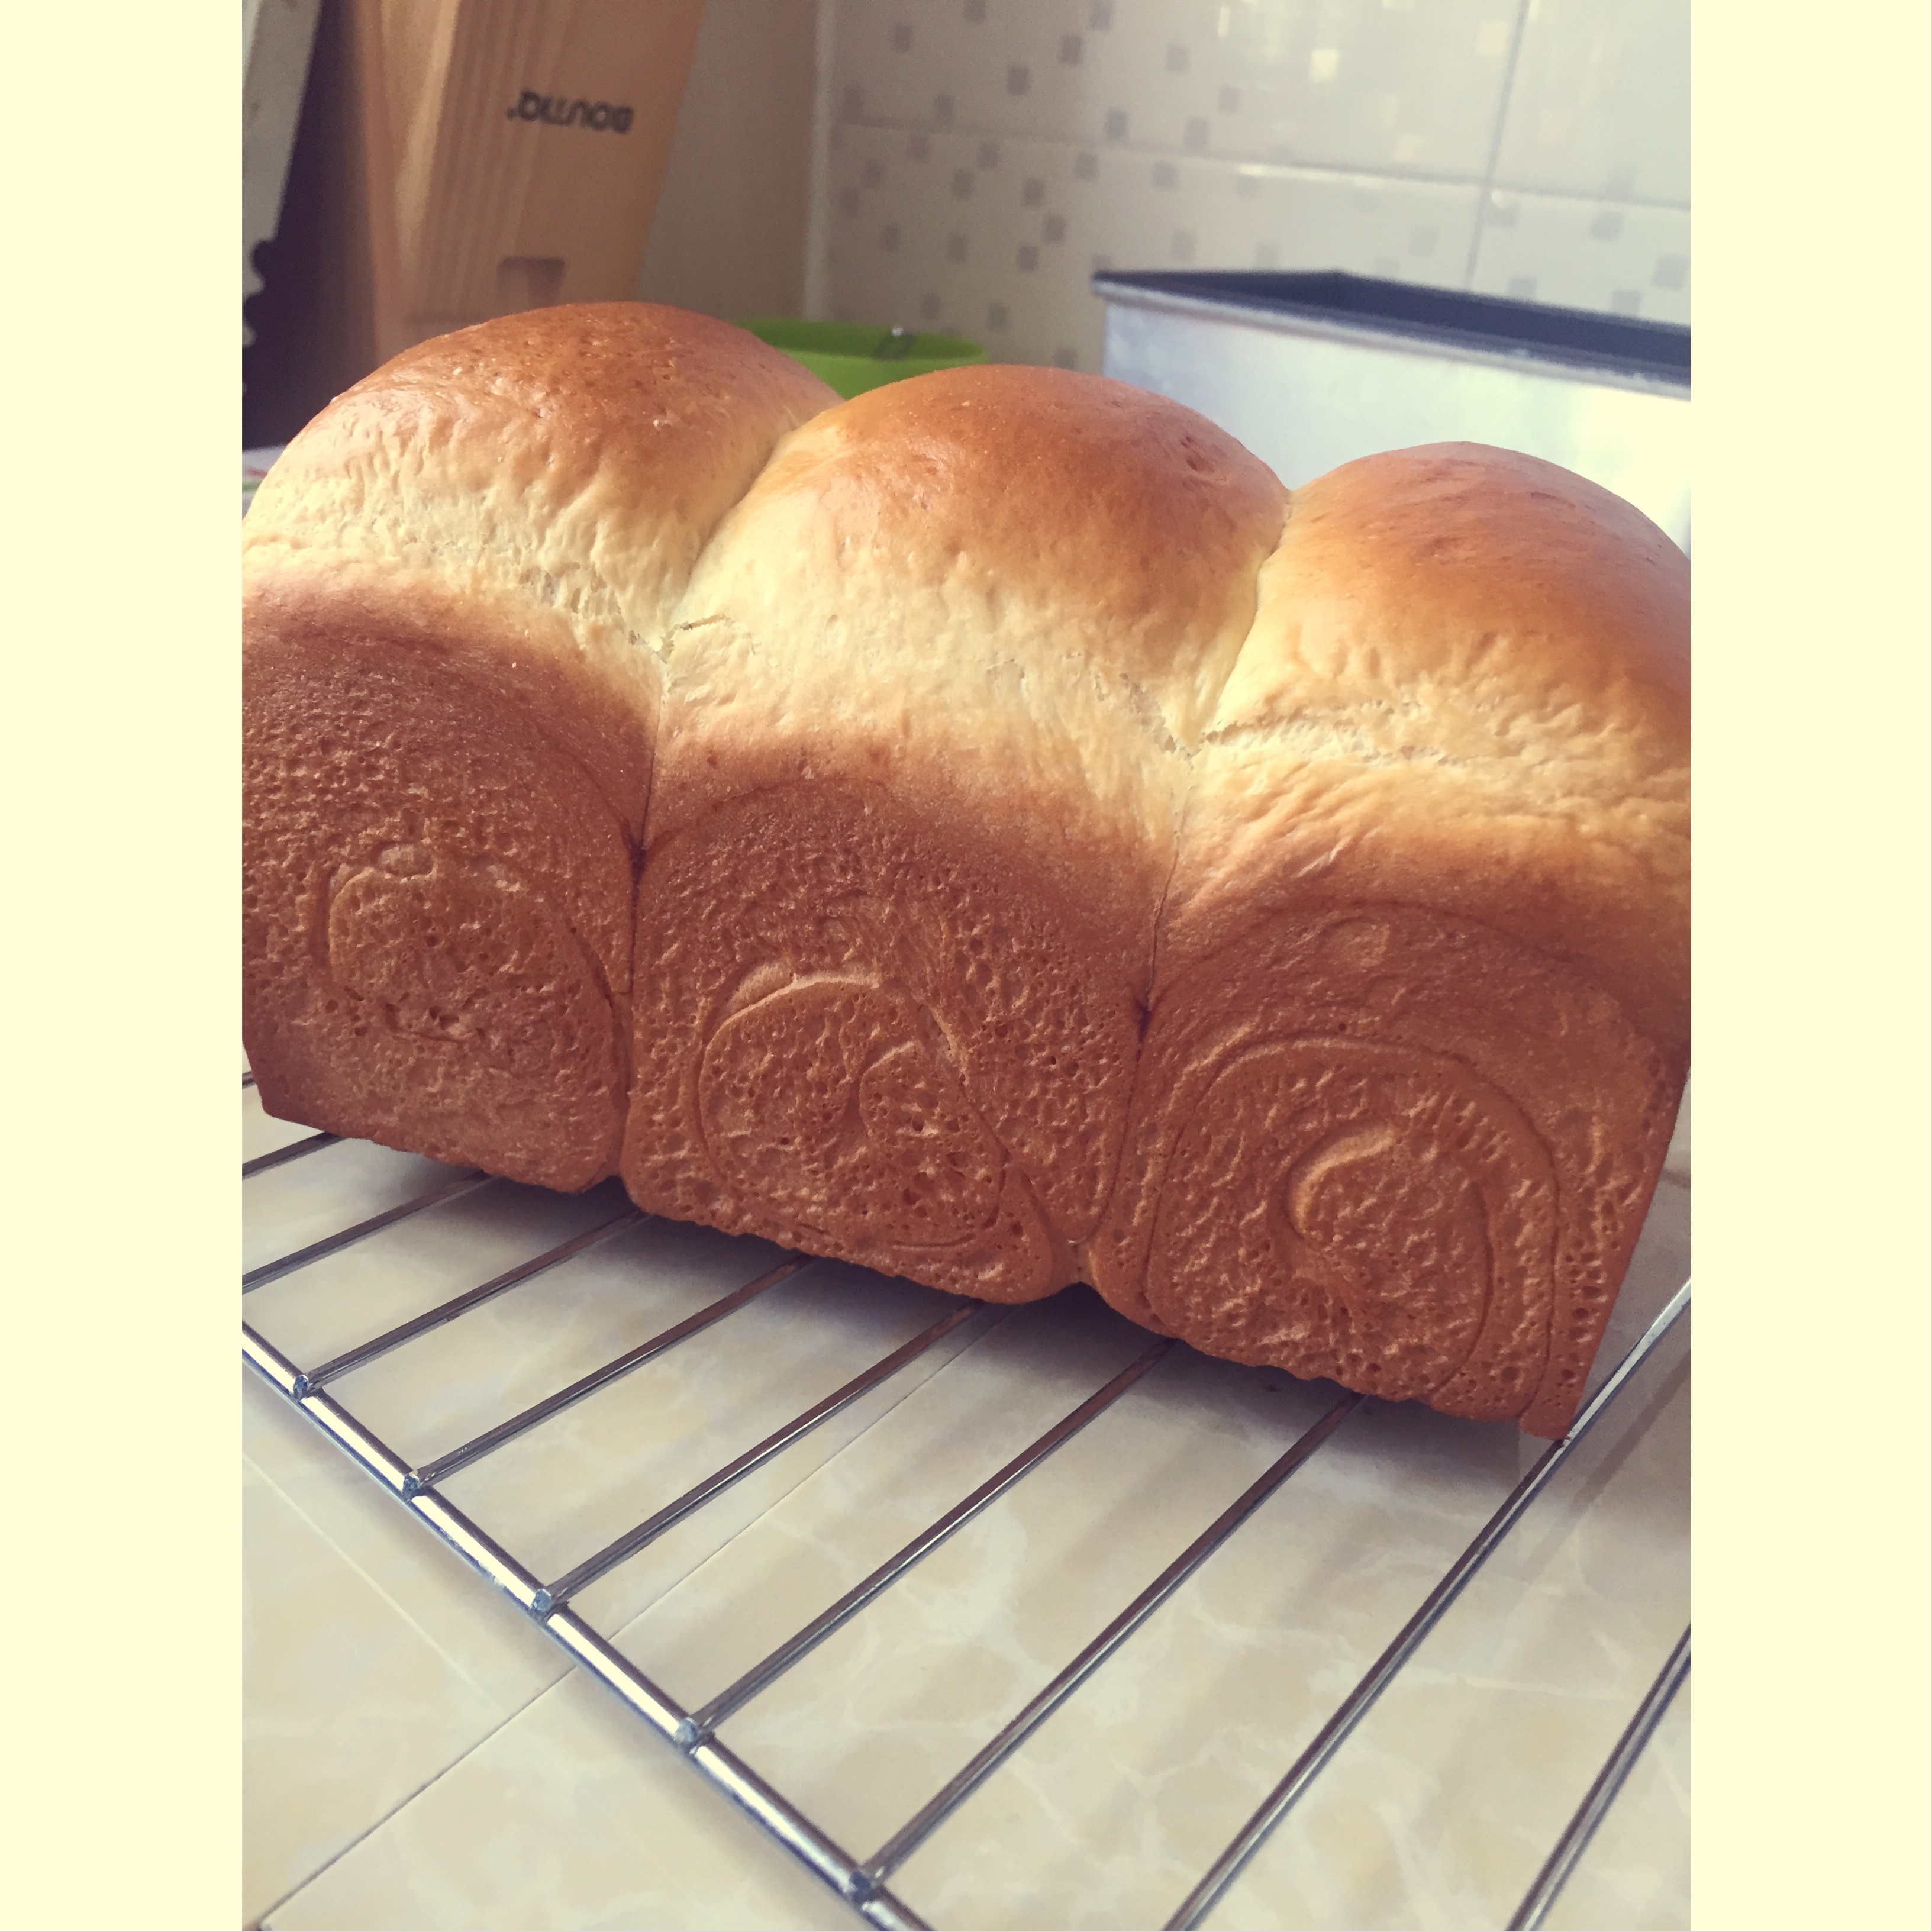 低温中种发酵面包